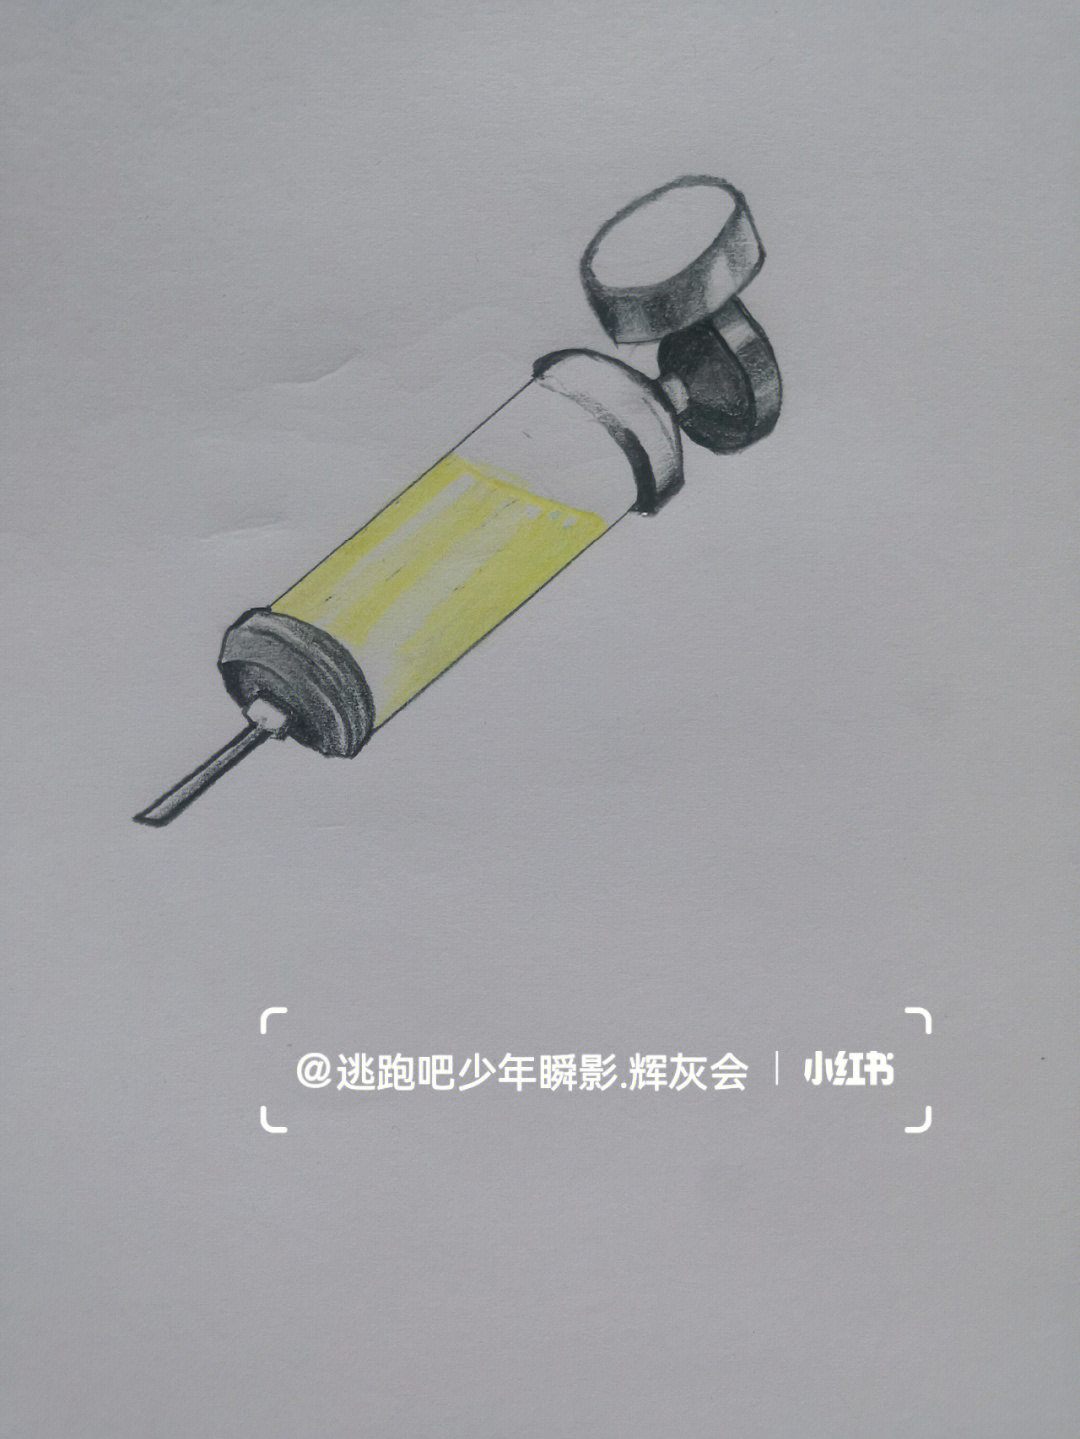 肾上腺素注射笔的用法图片